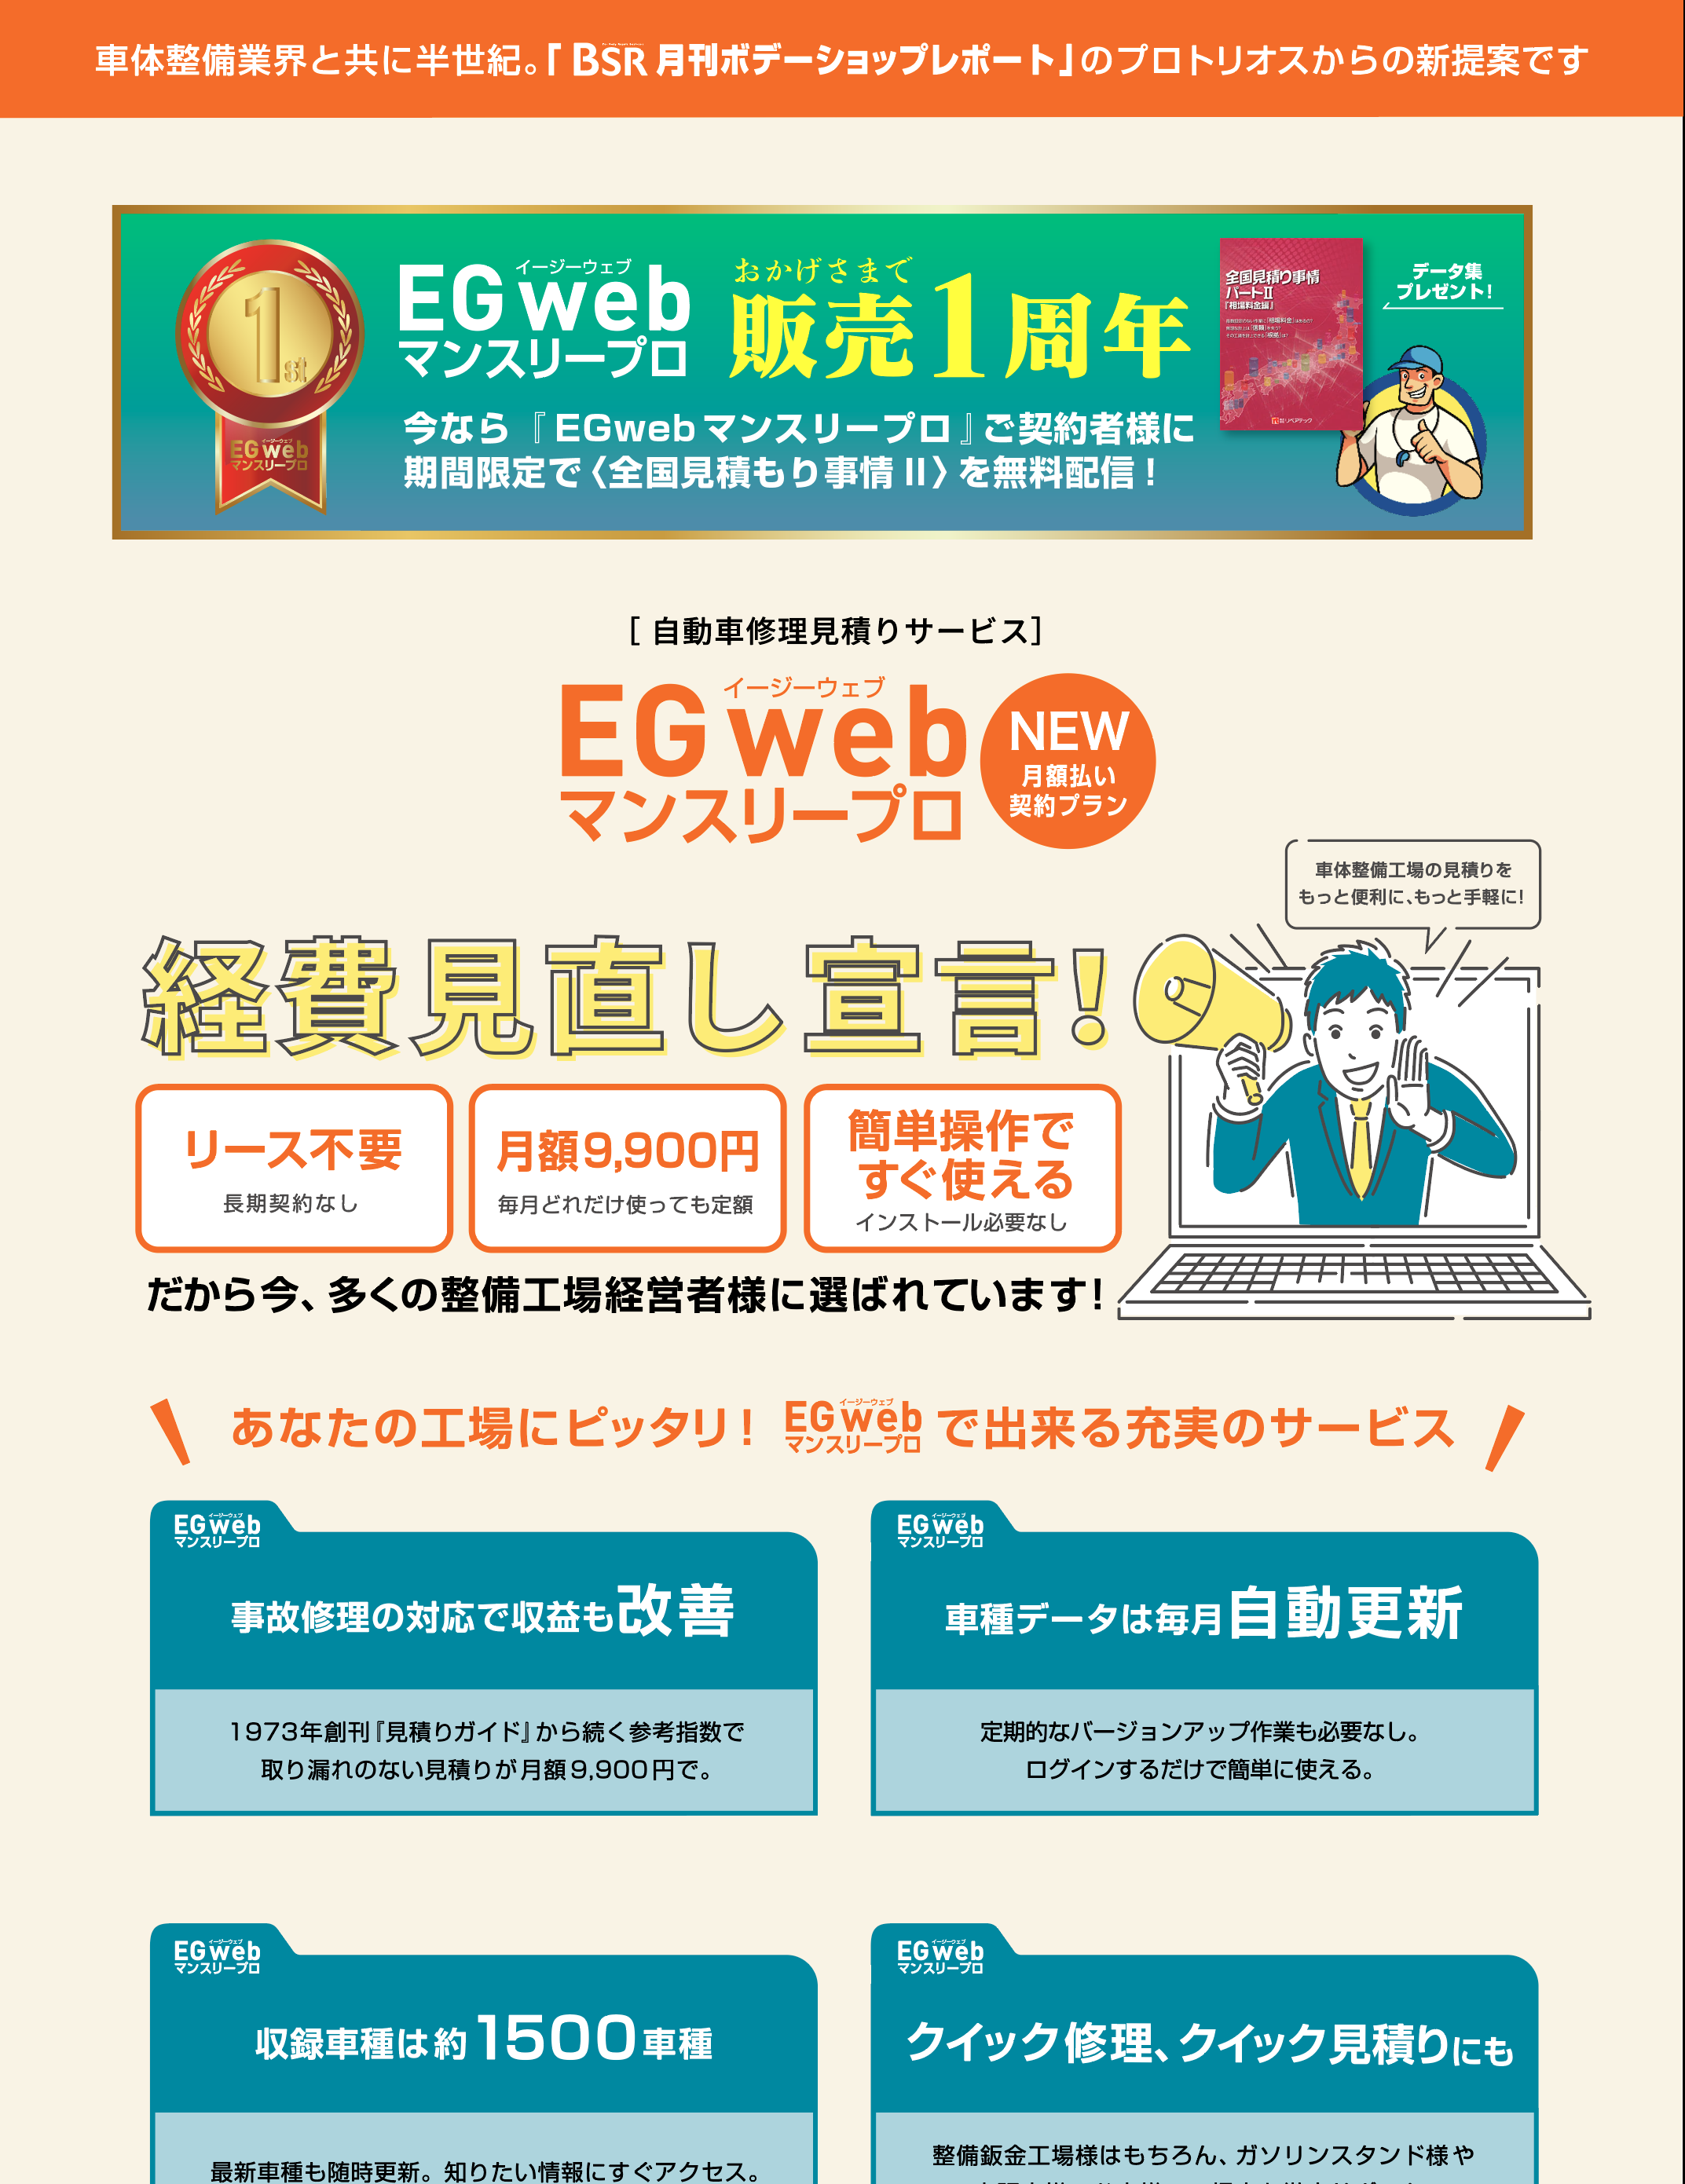 EGweb申し込みキャンペーン